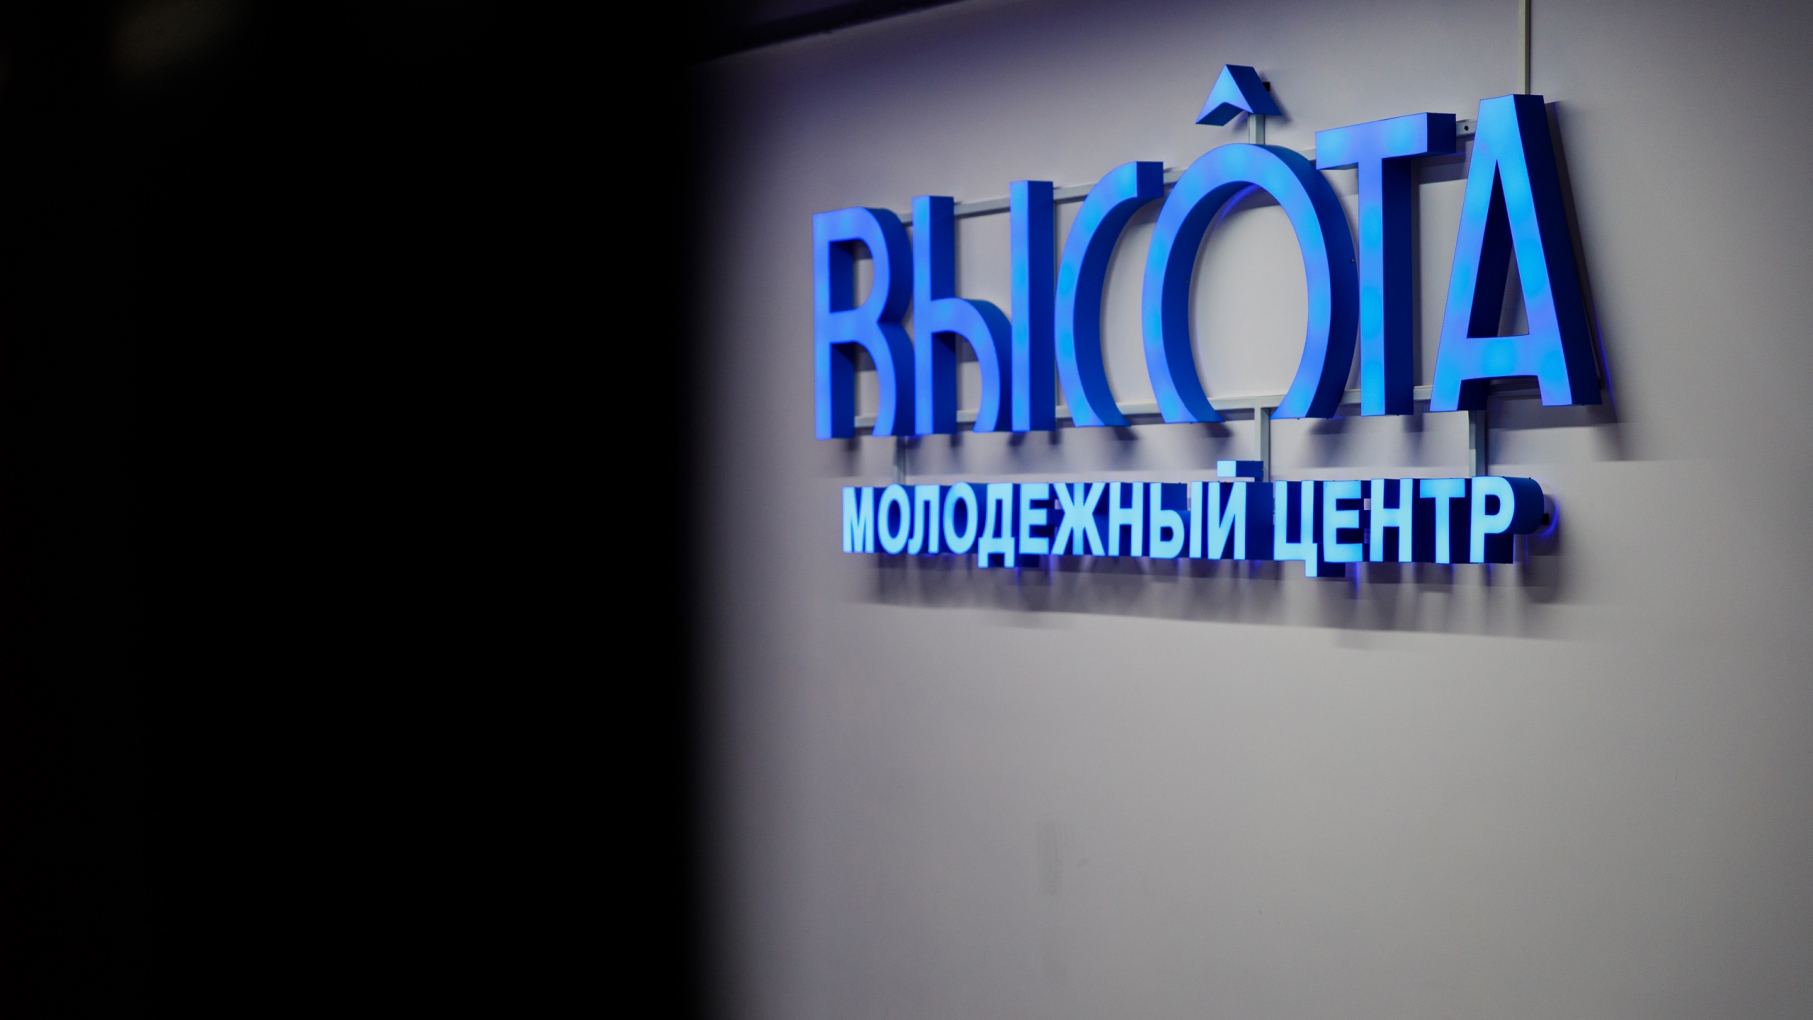 В нижегородском центре «Высота» откроется профориентационная лаборатория для школьников